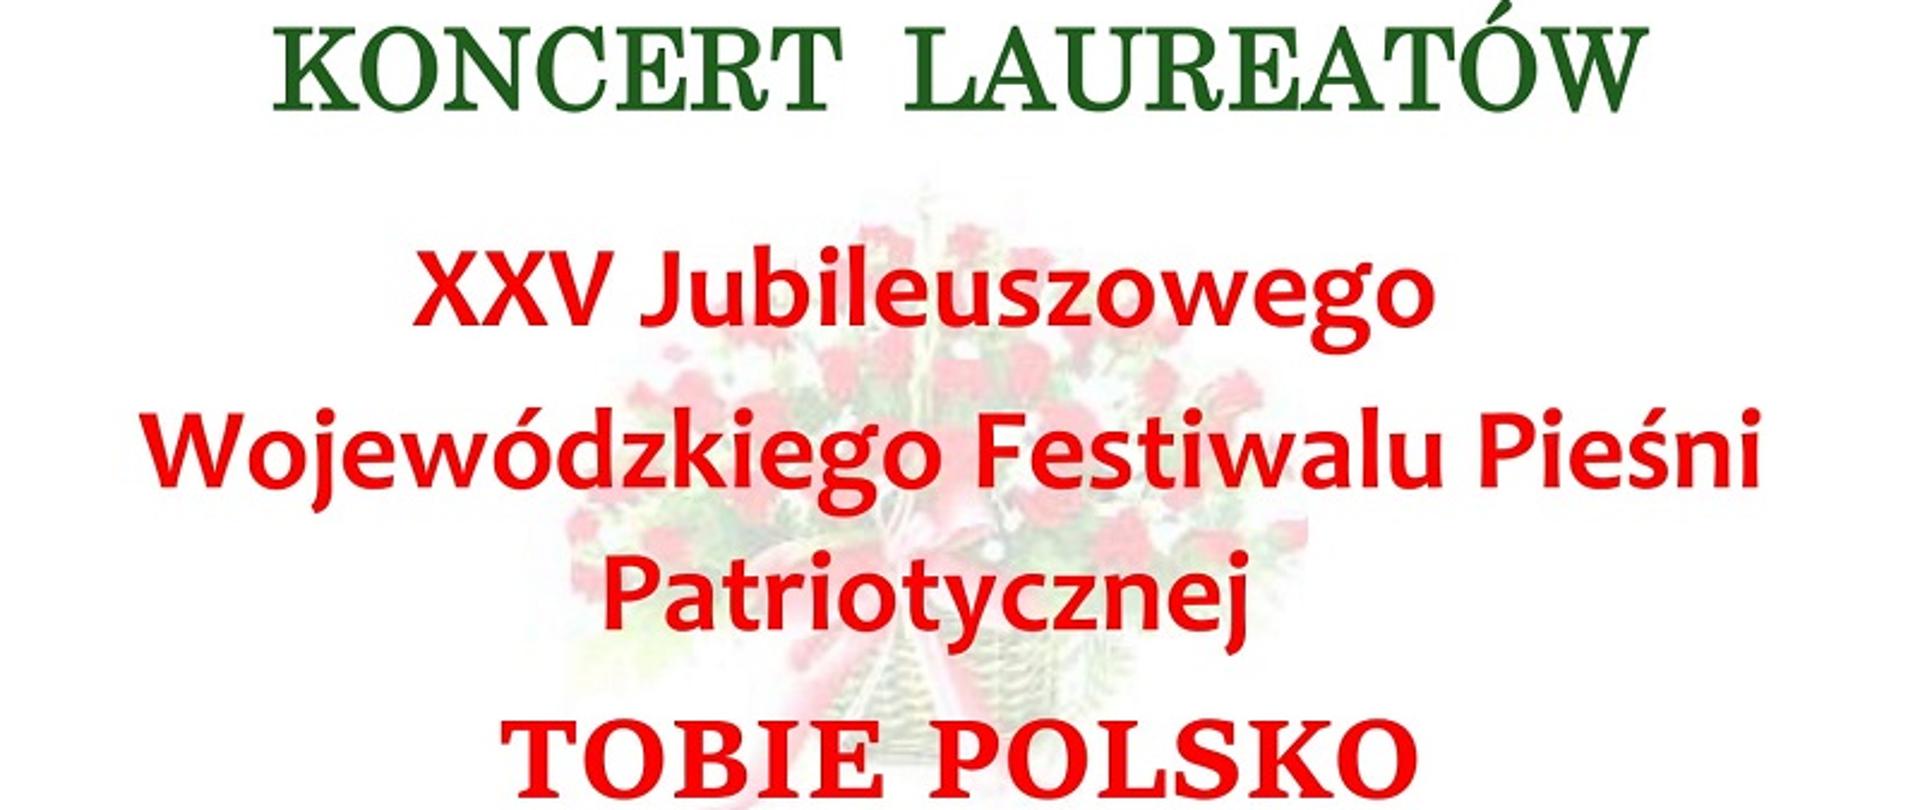 XXV Jubileuszowy Wojewódzki Festiwal Pieśni Patriotycznej TOBIE POLSKO